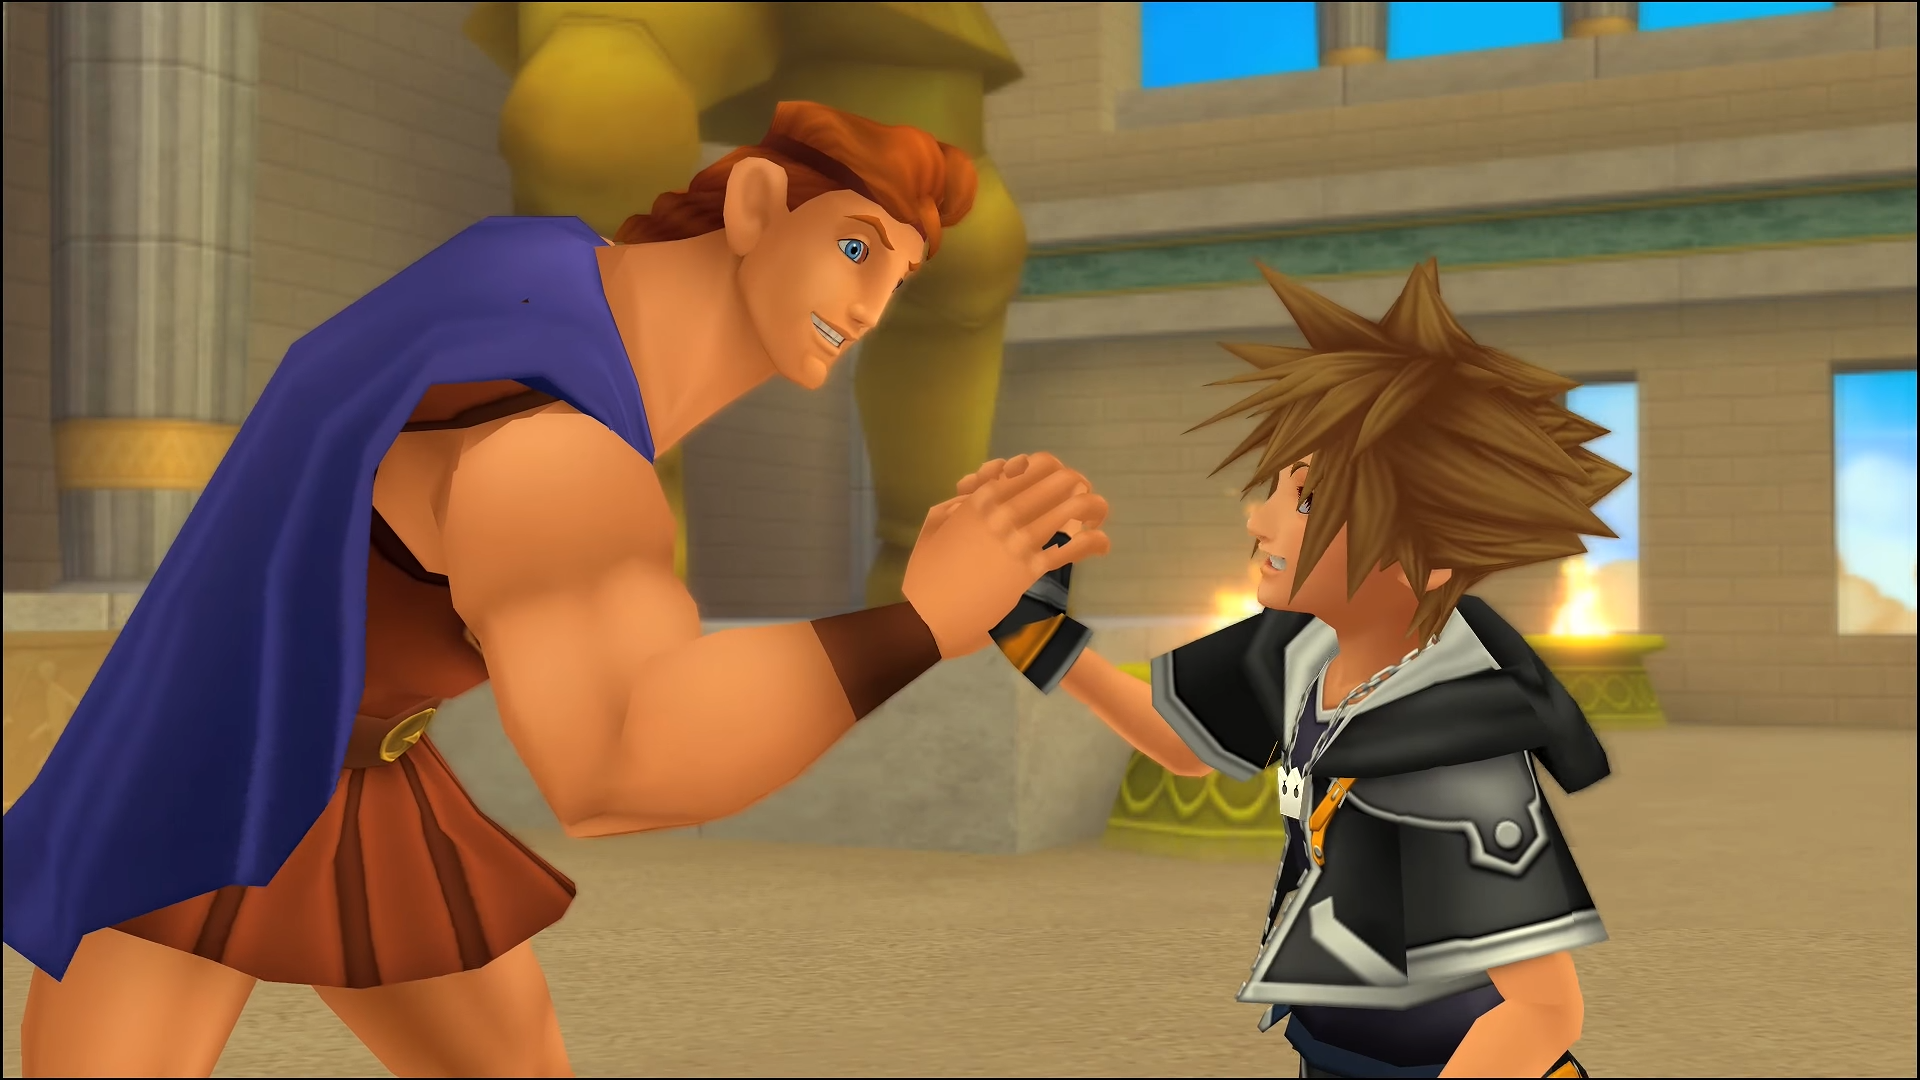 "Kingdom Hearts II". 2007. Square Enix. Disney. Sora and Hercules reunite.